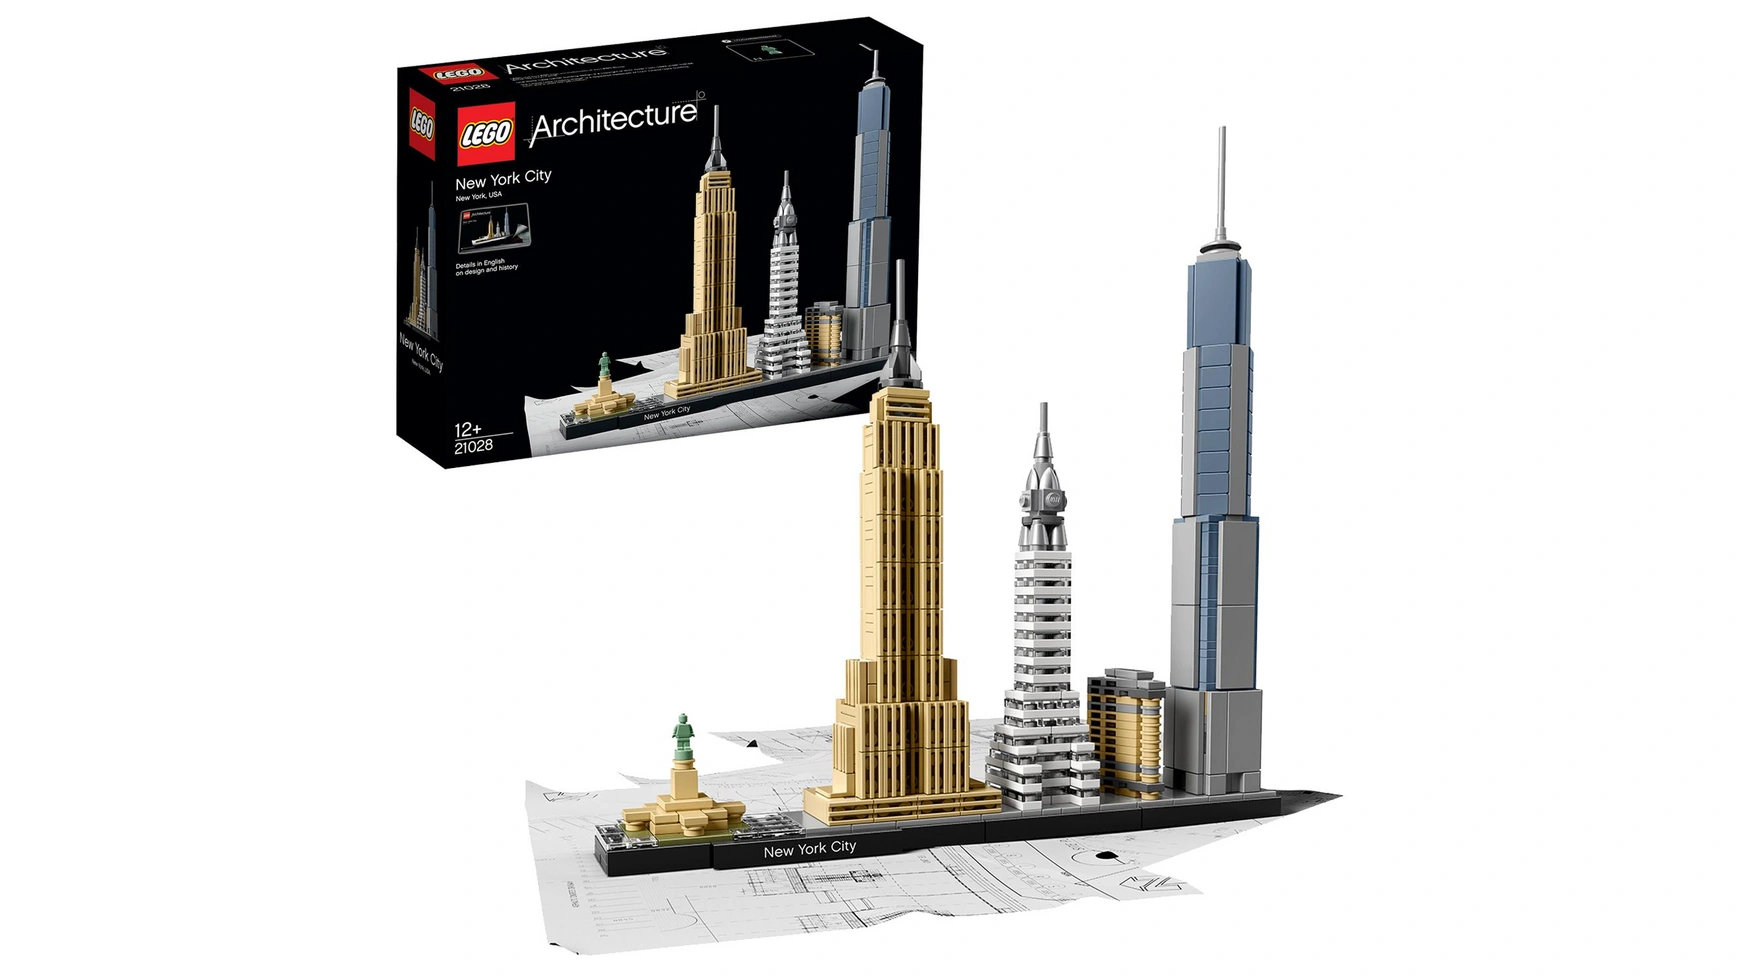 жесткий бренд билдинг выжмите из клиента дополнительную маржу Lego Architecture Нью-Йорк